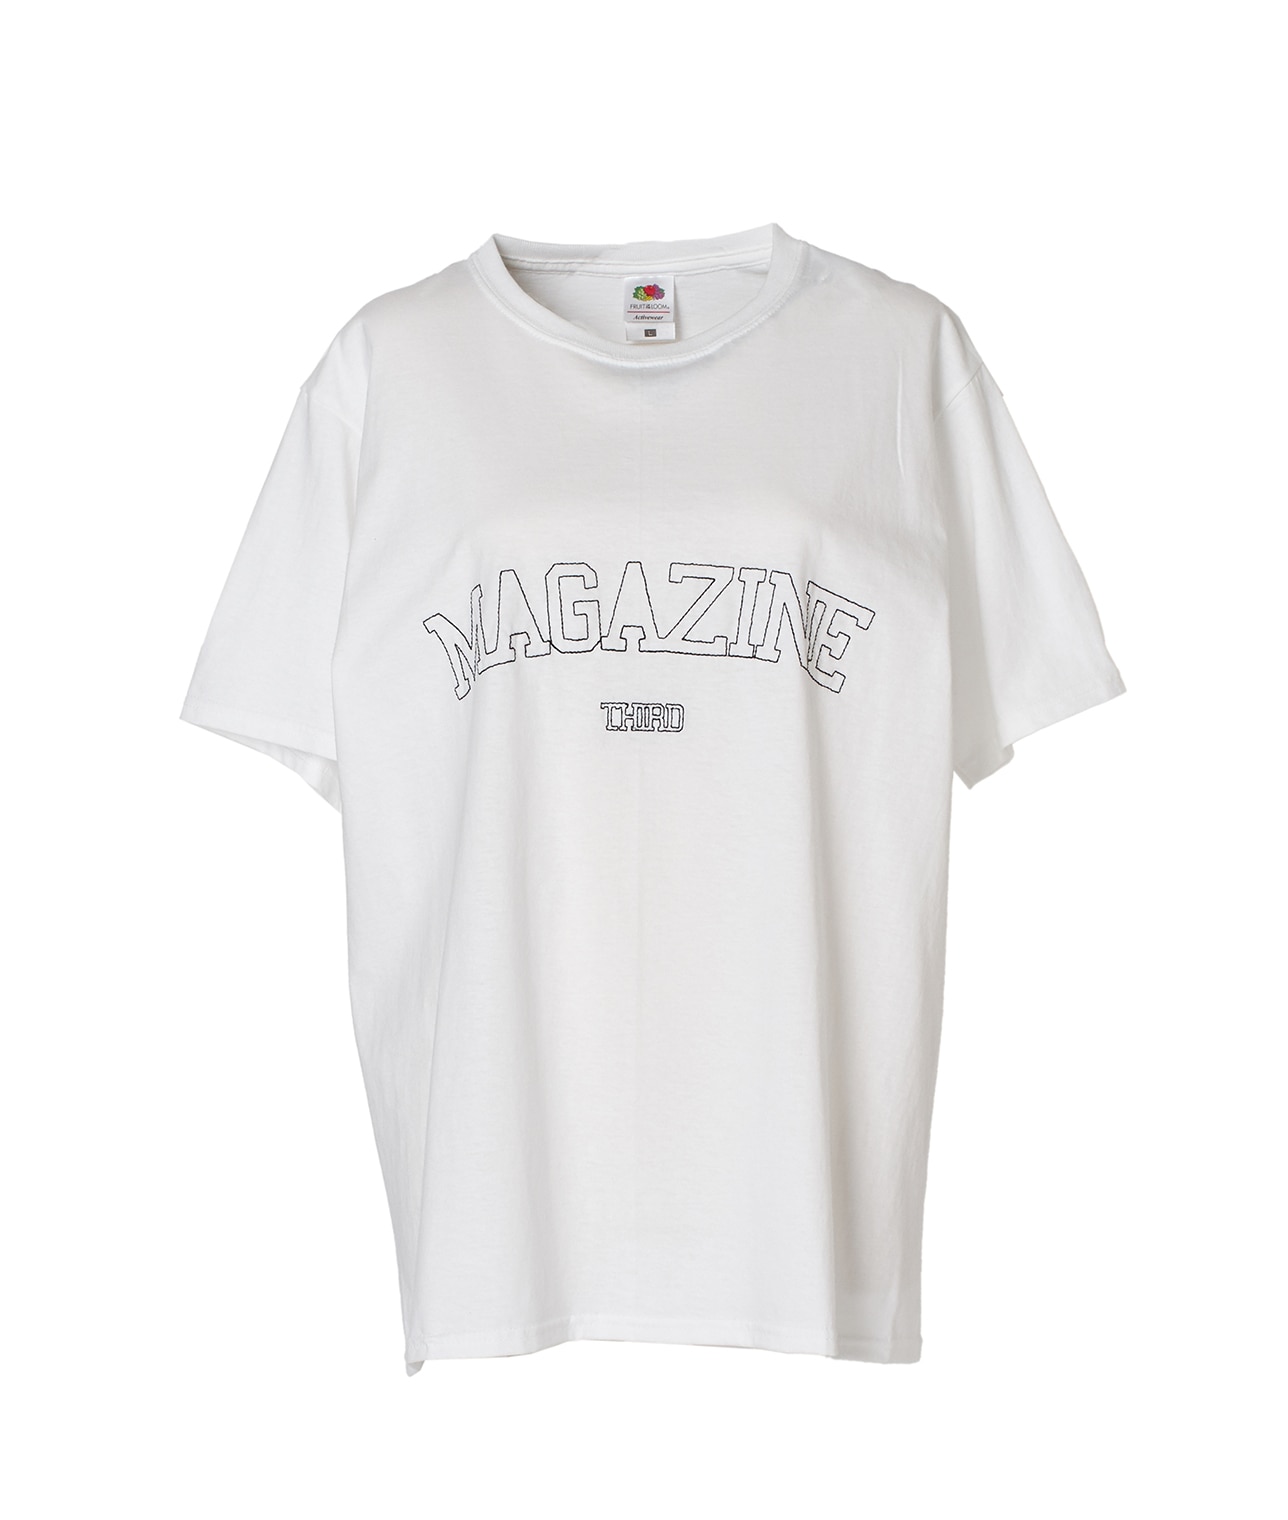 【別注】FRUIT OF THE LOOM/ビッグロゴ刺繍パックTシャツ 詳細画像 ホワイト/グレー 1